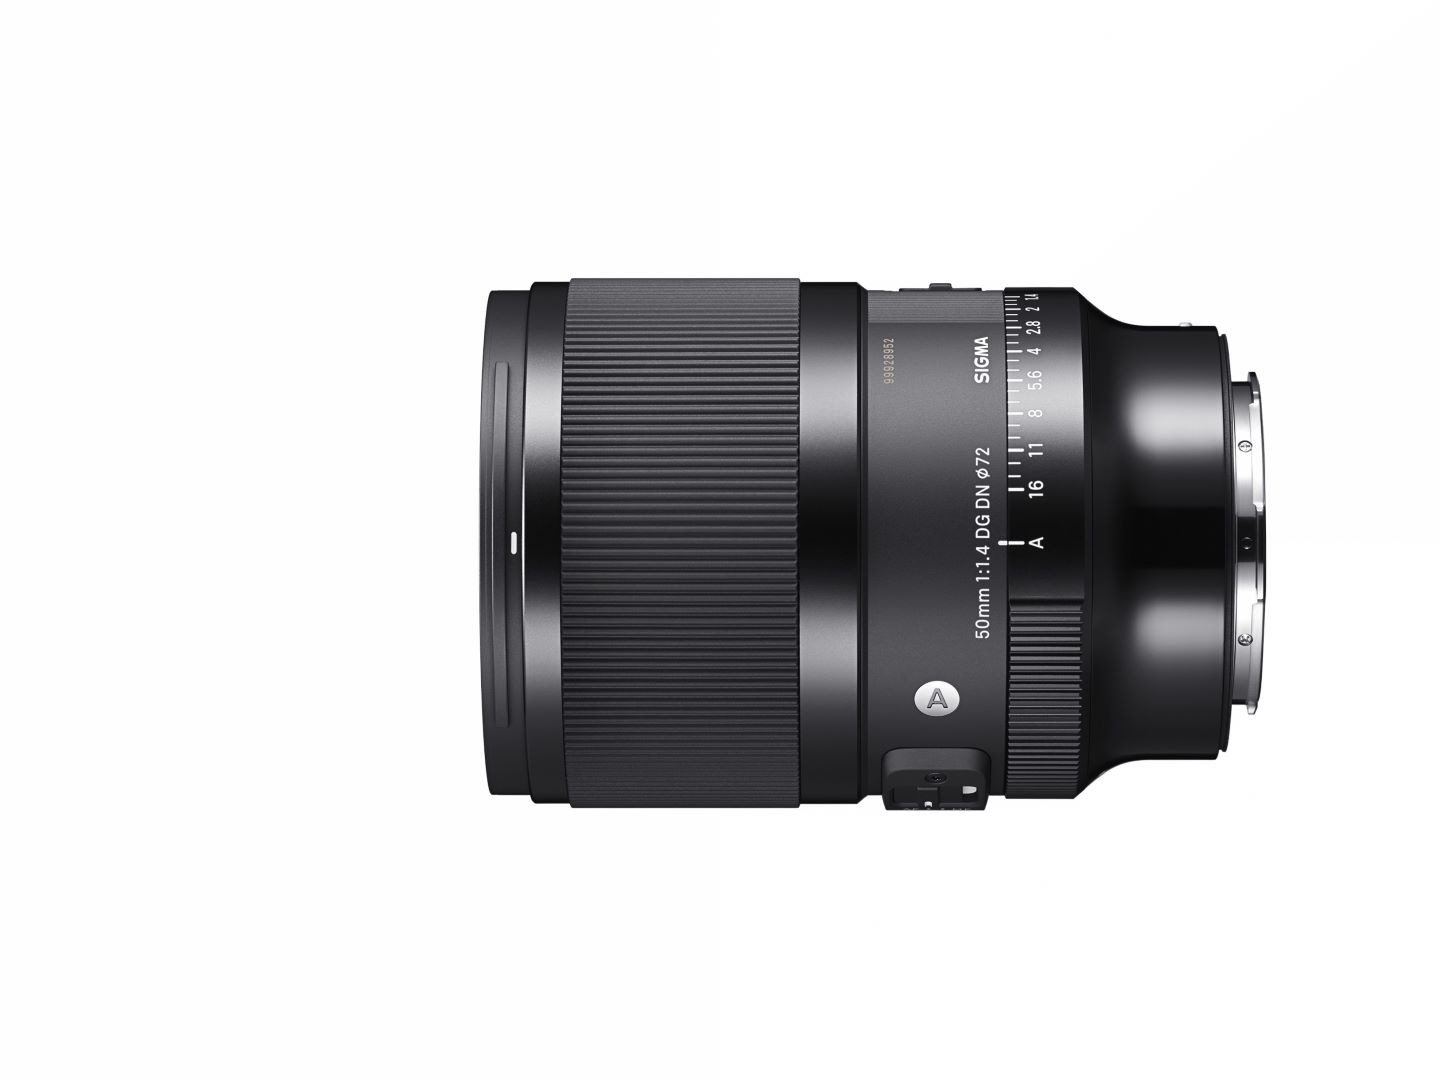 Sigma ra mắt ống kính 50mm F1.4 DG DN (A) mới